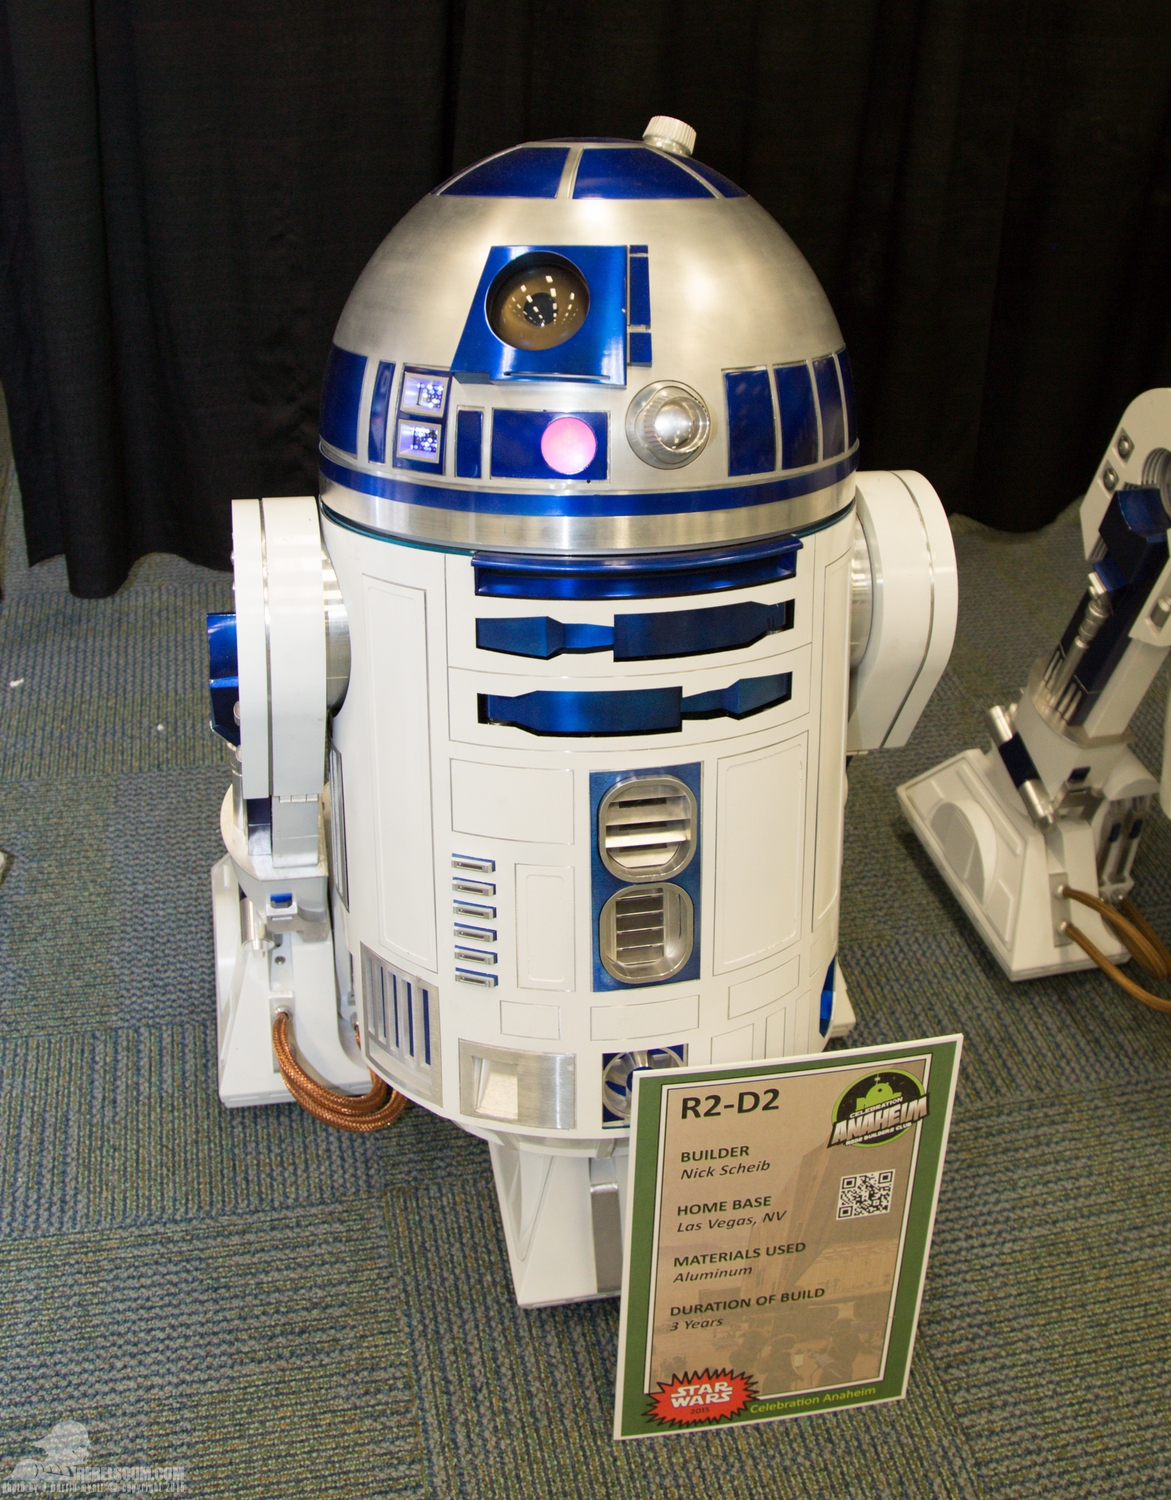 Star-Wars-Celebration-Anaheim-2015-R2-Builders-039.jpg